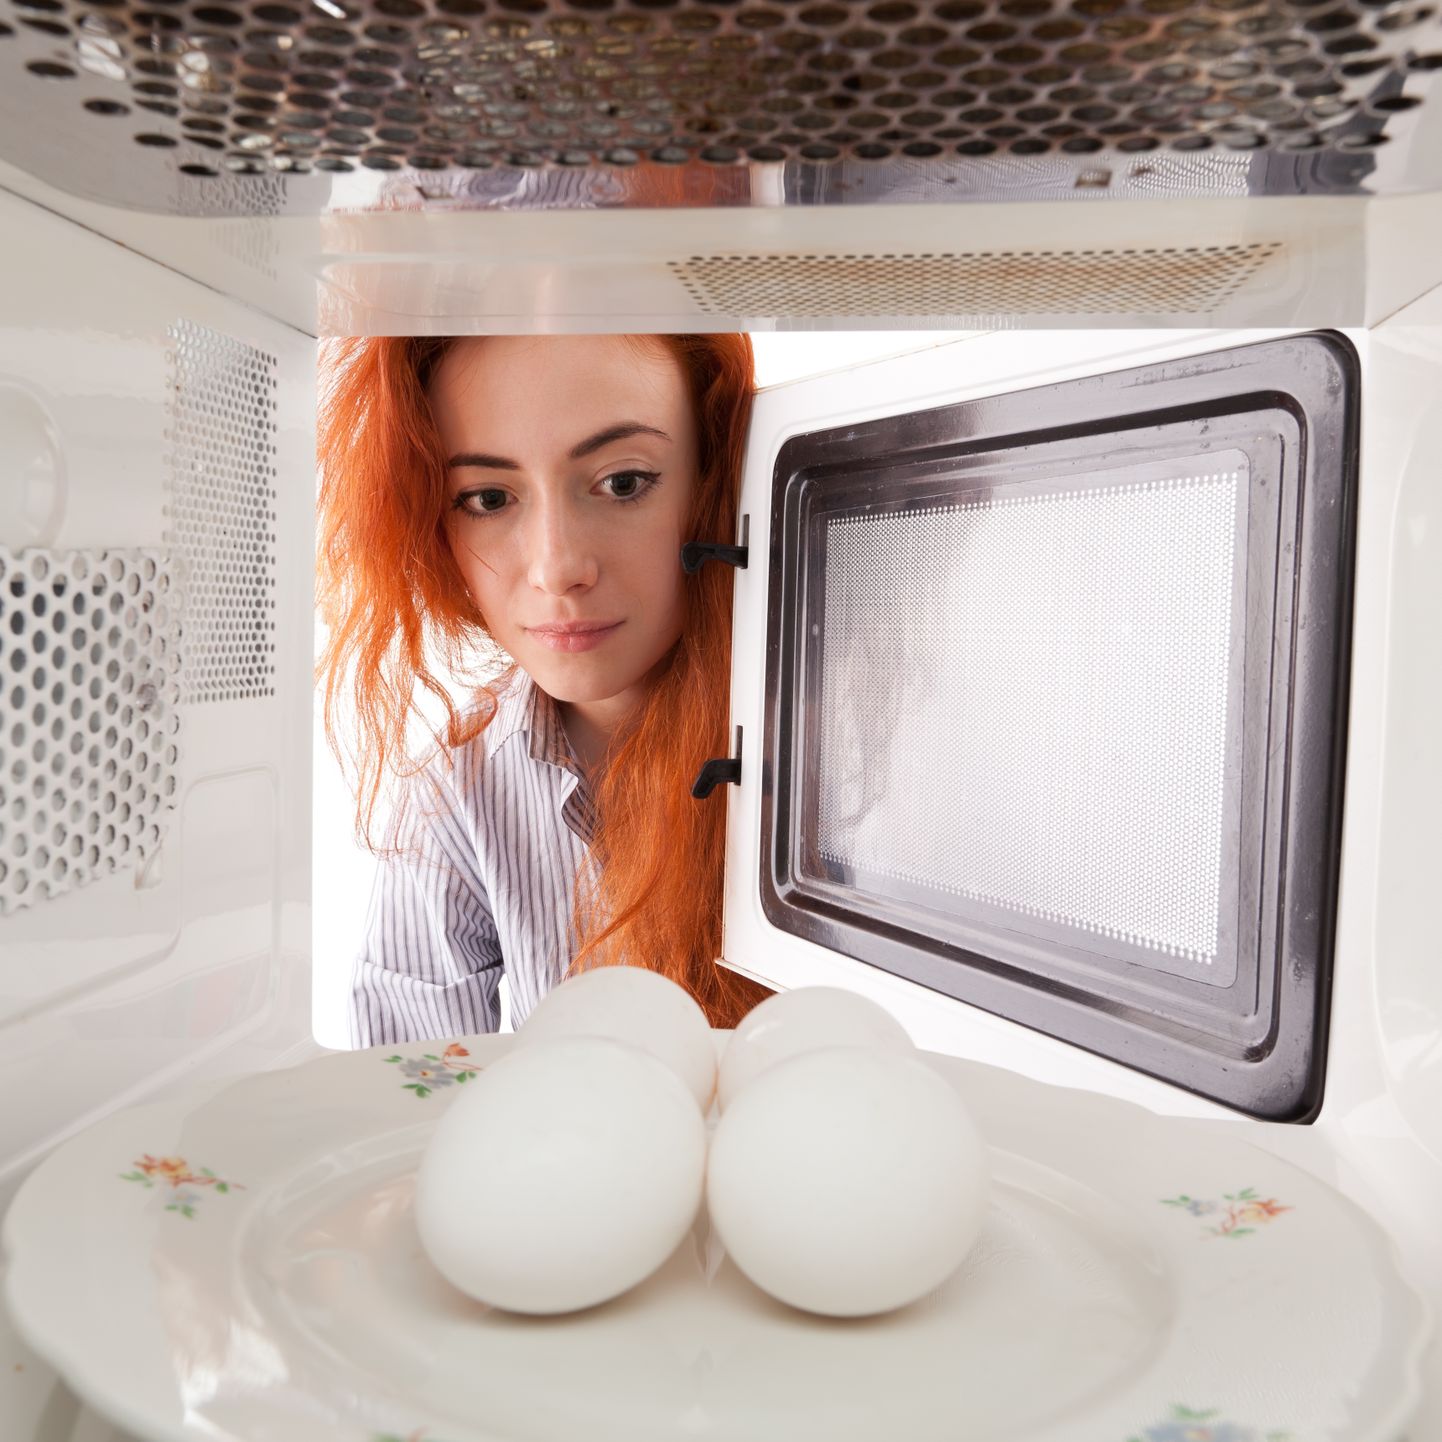 Яйца можно готовить и в микроволновке. Иллюстративное фото